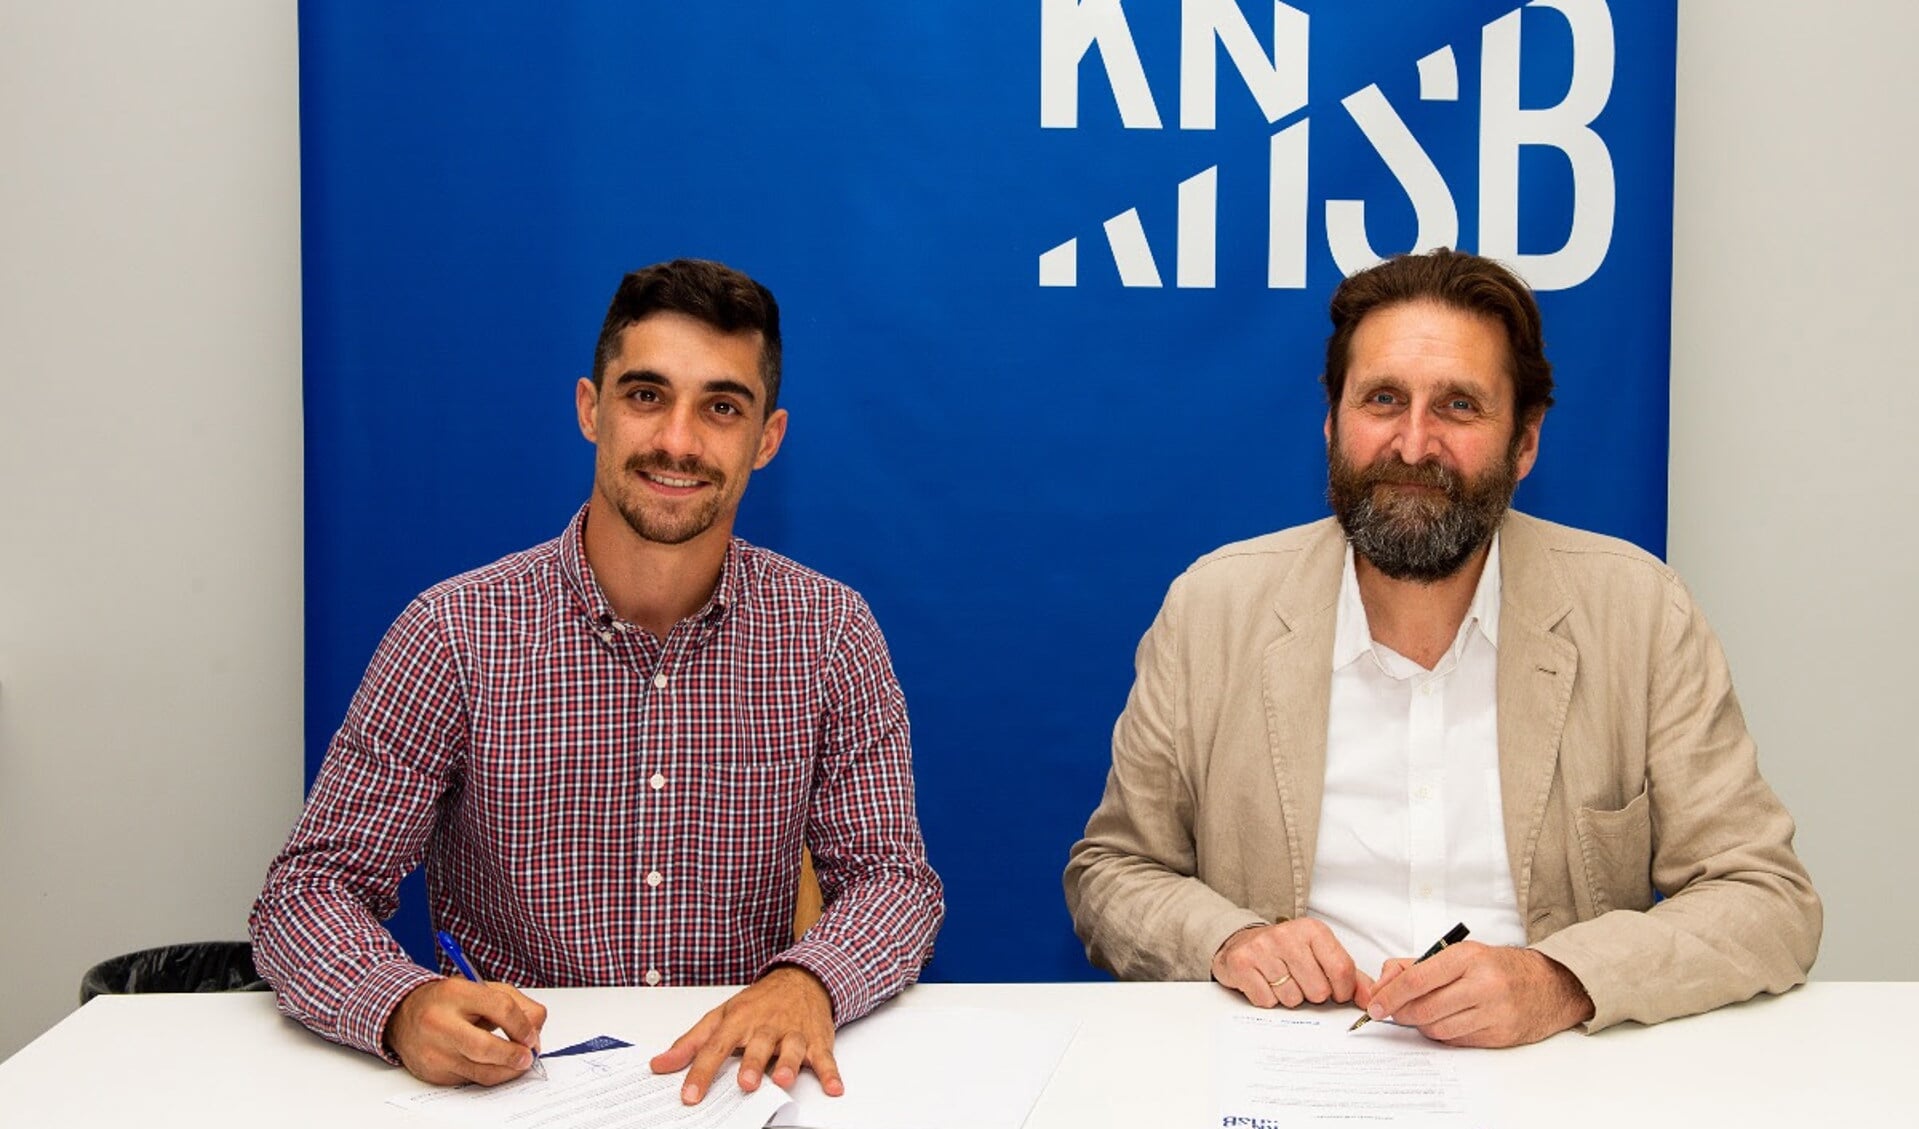 Javier Fernández en Herman de Haan zetten hun handtekening onder het samenwerkingscontract tussen beide partijen, dat bedoeld is om het kunstrijden in Nederland een impuls te geven. Foto KNSB